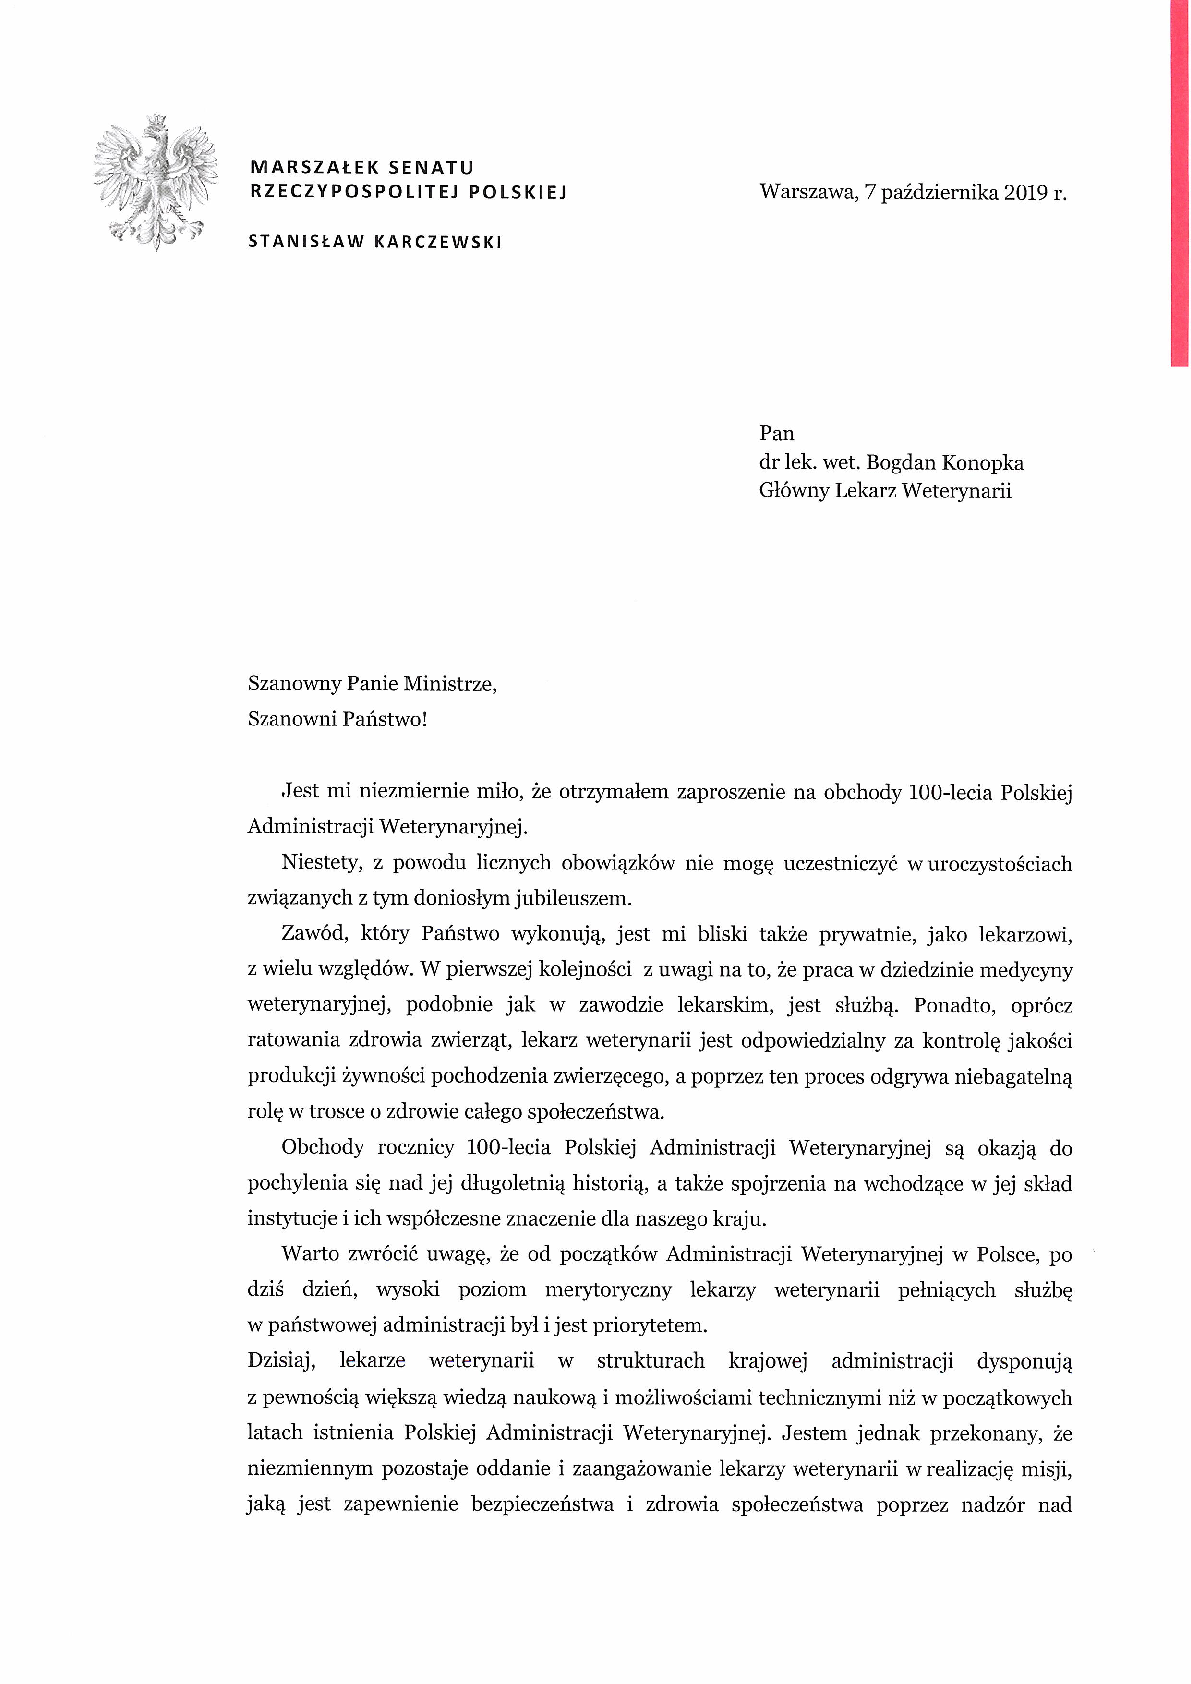 List Marszałka Senatu Stanisława Karczewskiego z okazji obchodów 100-lecia Polskiej Administracji Weterynaryjnej